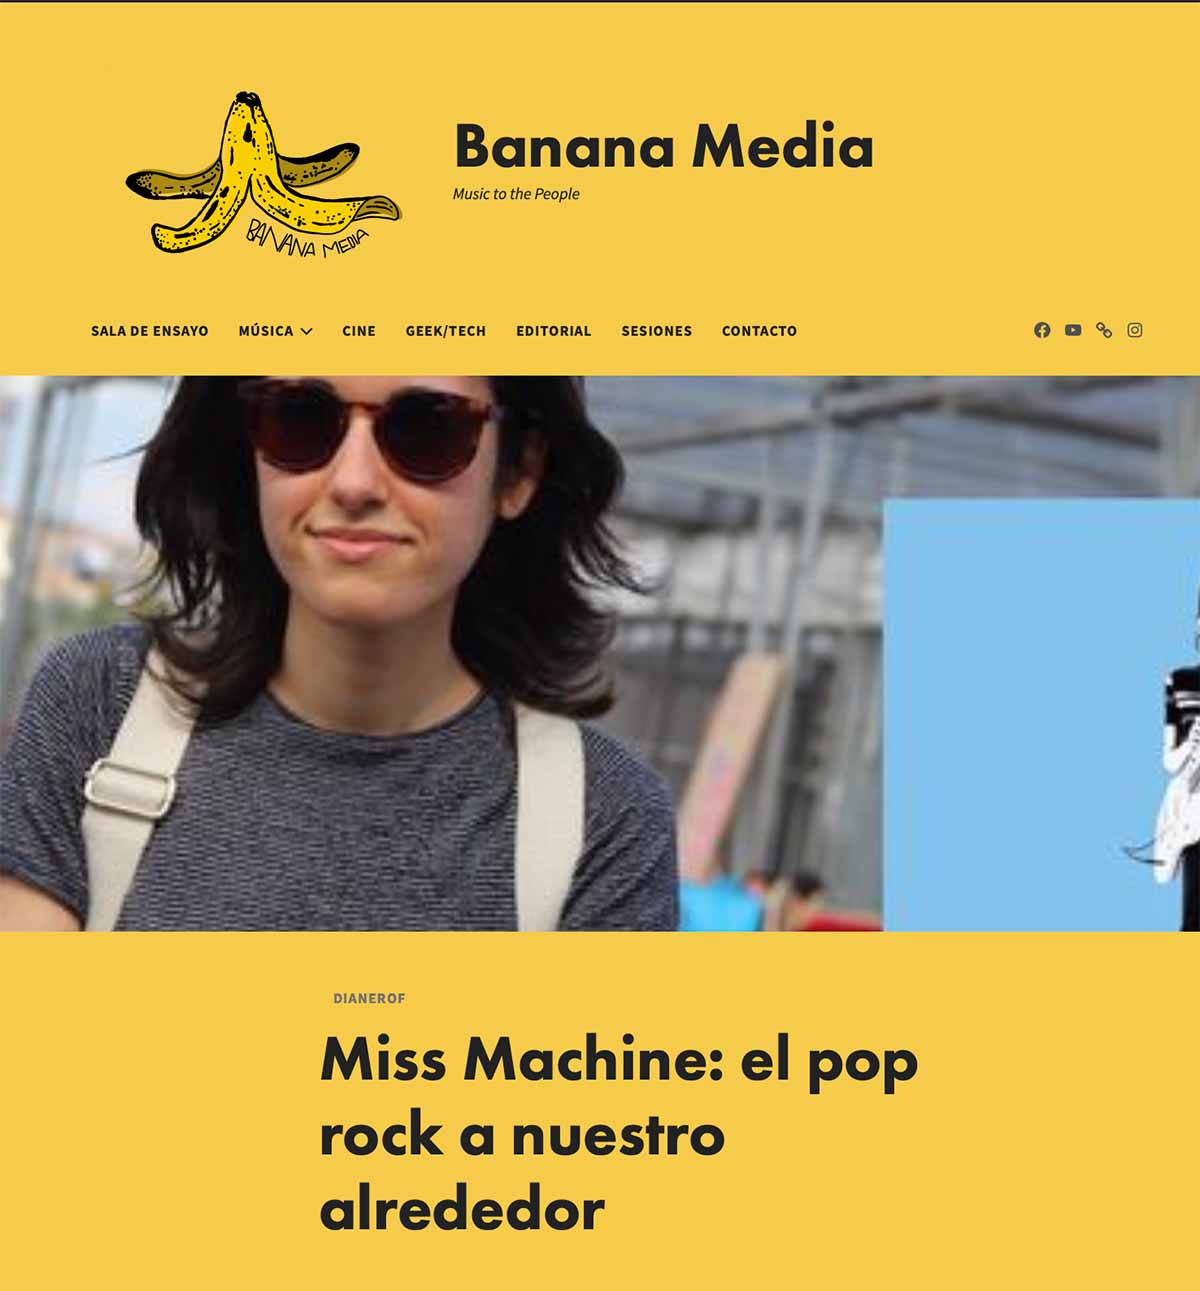 Banana Media